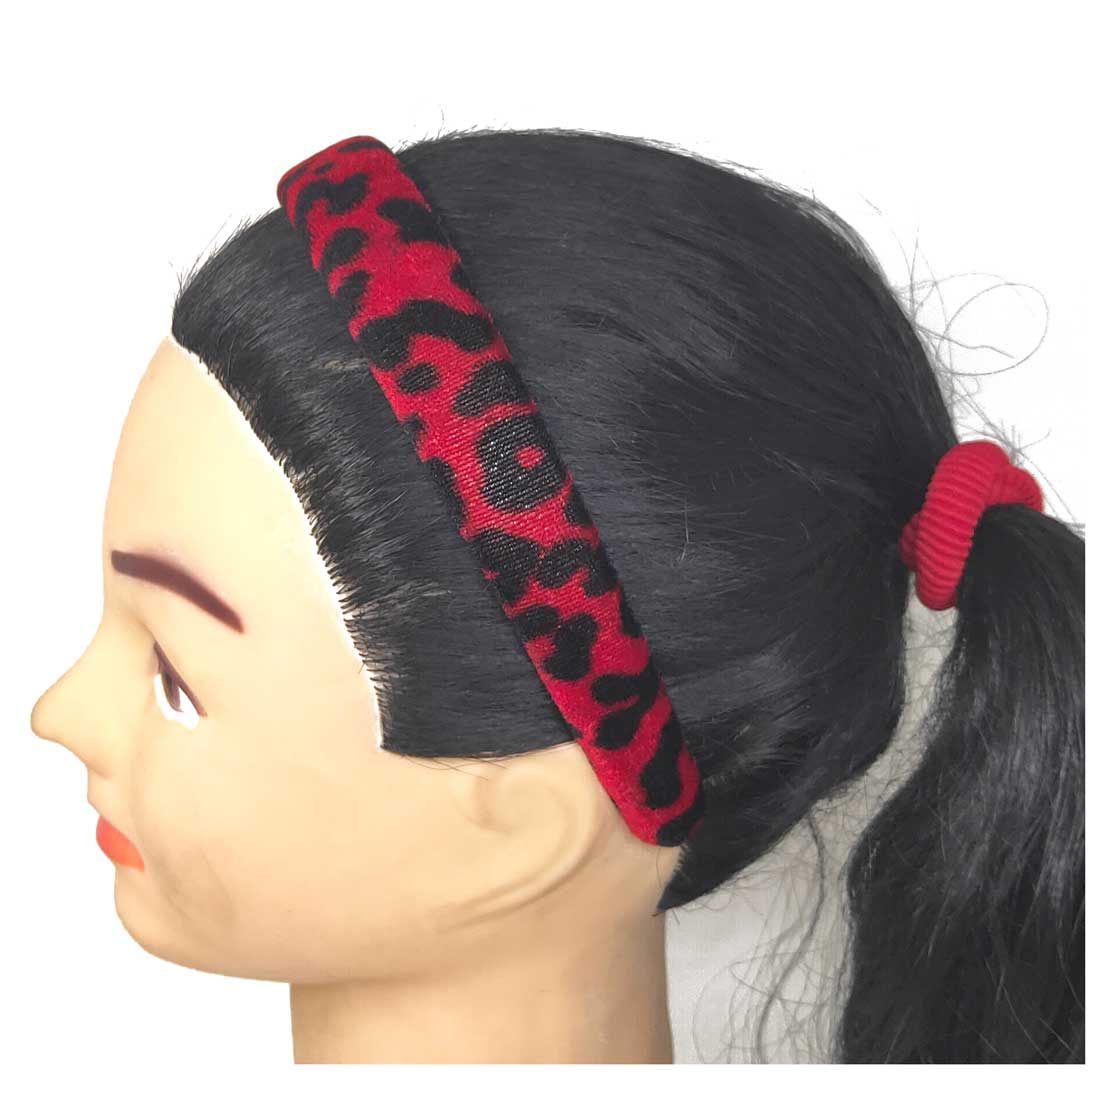 Anokhi Ada Velvet on Plastic Hairbands / Headbands for Kids and Girls (Maroon, Pack of 1) - 09-11H